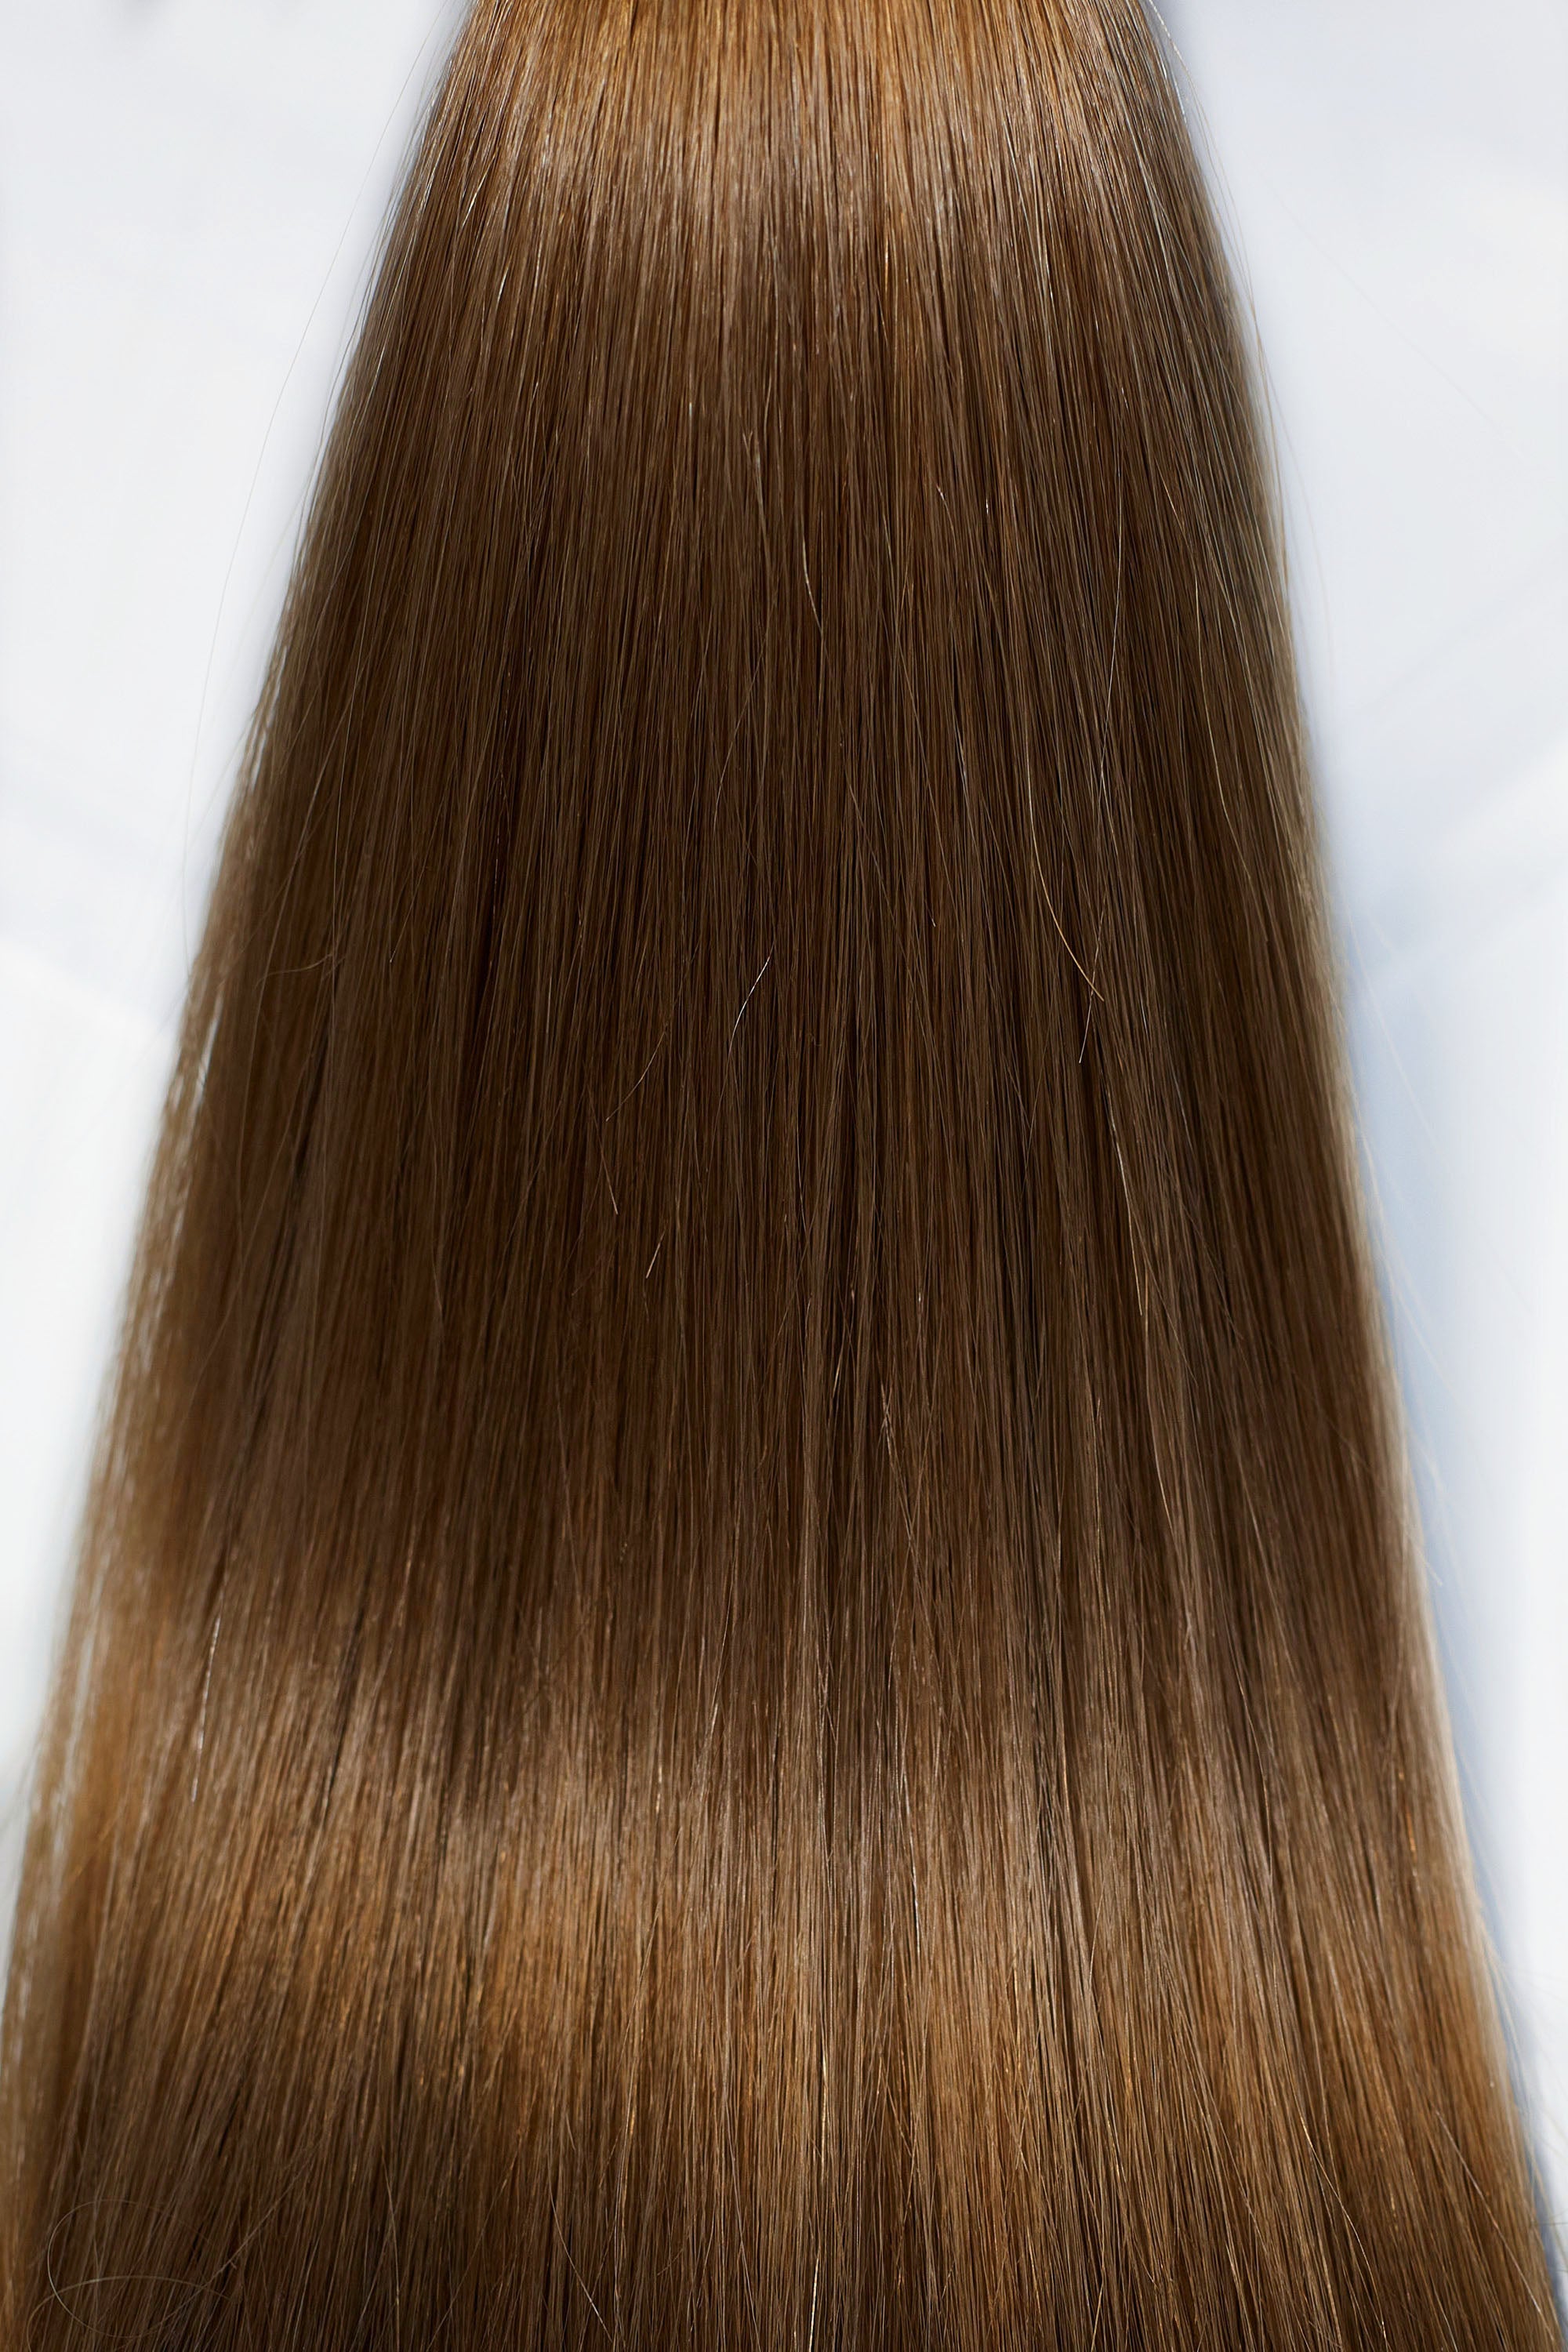 Behair professional Bulk hair "Premium" 24" (60cm) Natural Straight Chestnut #6 - 25g hair extensions